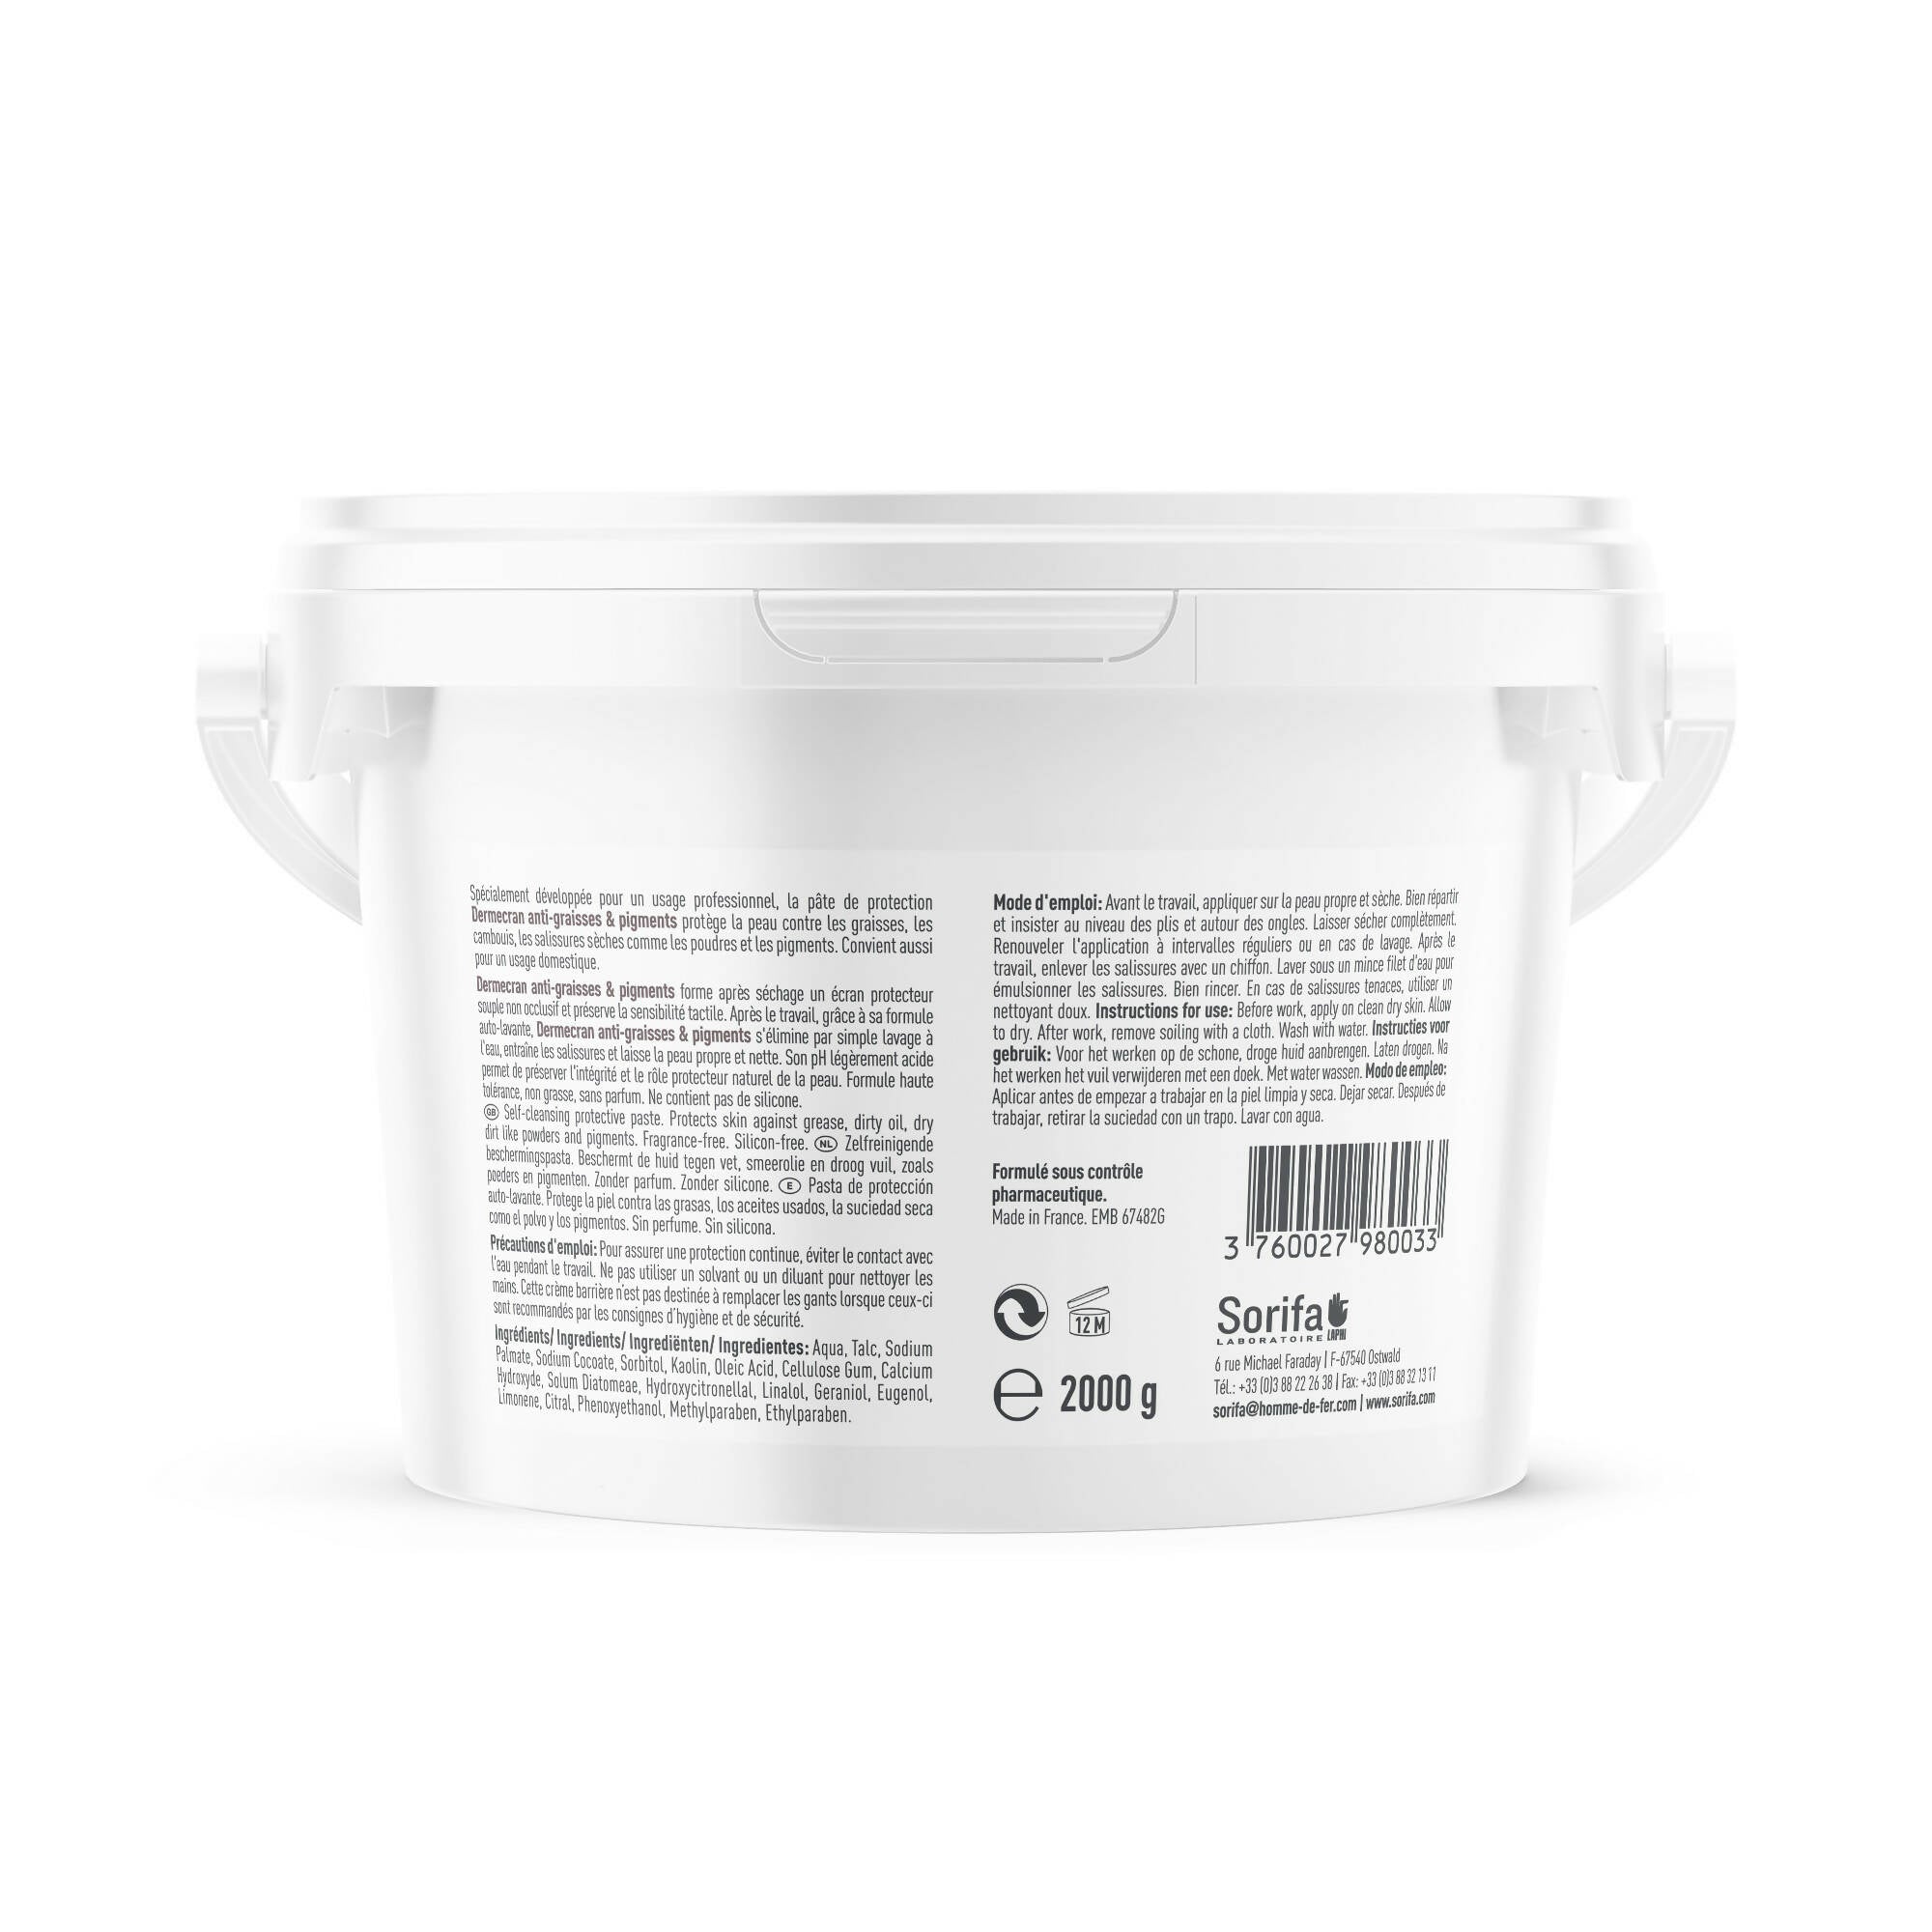 SORIFA – Komplette Box mit 4 Stück – Dermscreen – Anti-Fett-Schutzpaste – SLOOD – Pulver – Pigmente – Hände und Arme – hohe Verträglichkeit – 2-kg-Glas. - 0